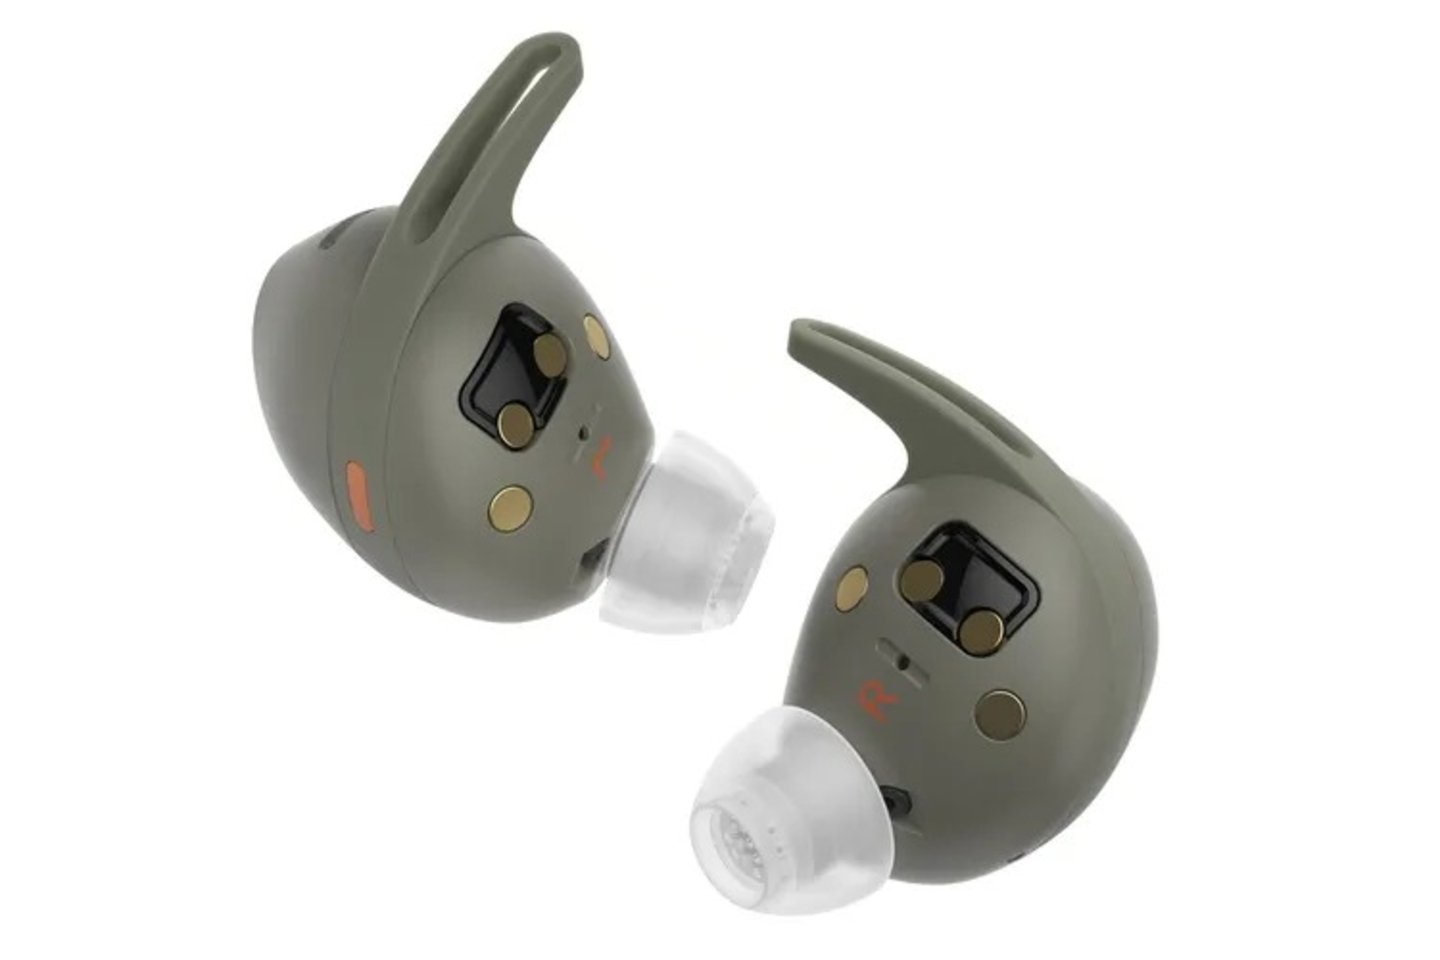 Los nuevos auriculares inalámbricos de Sennheiser pueden medir tu frecuencia cardíaca y temperatura corporal